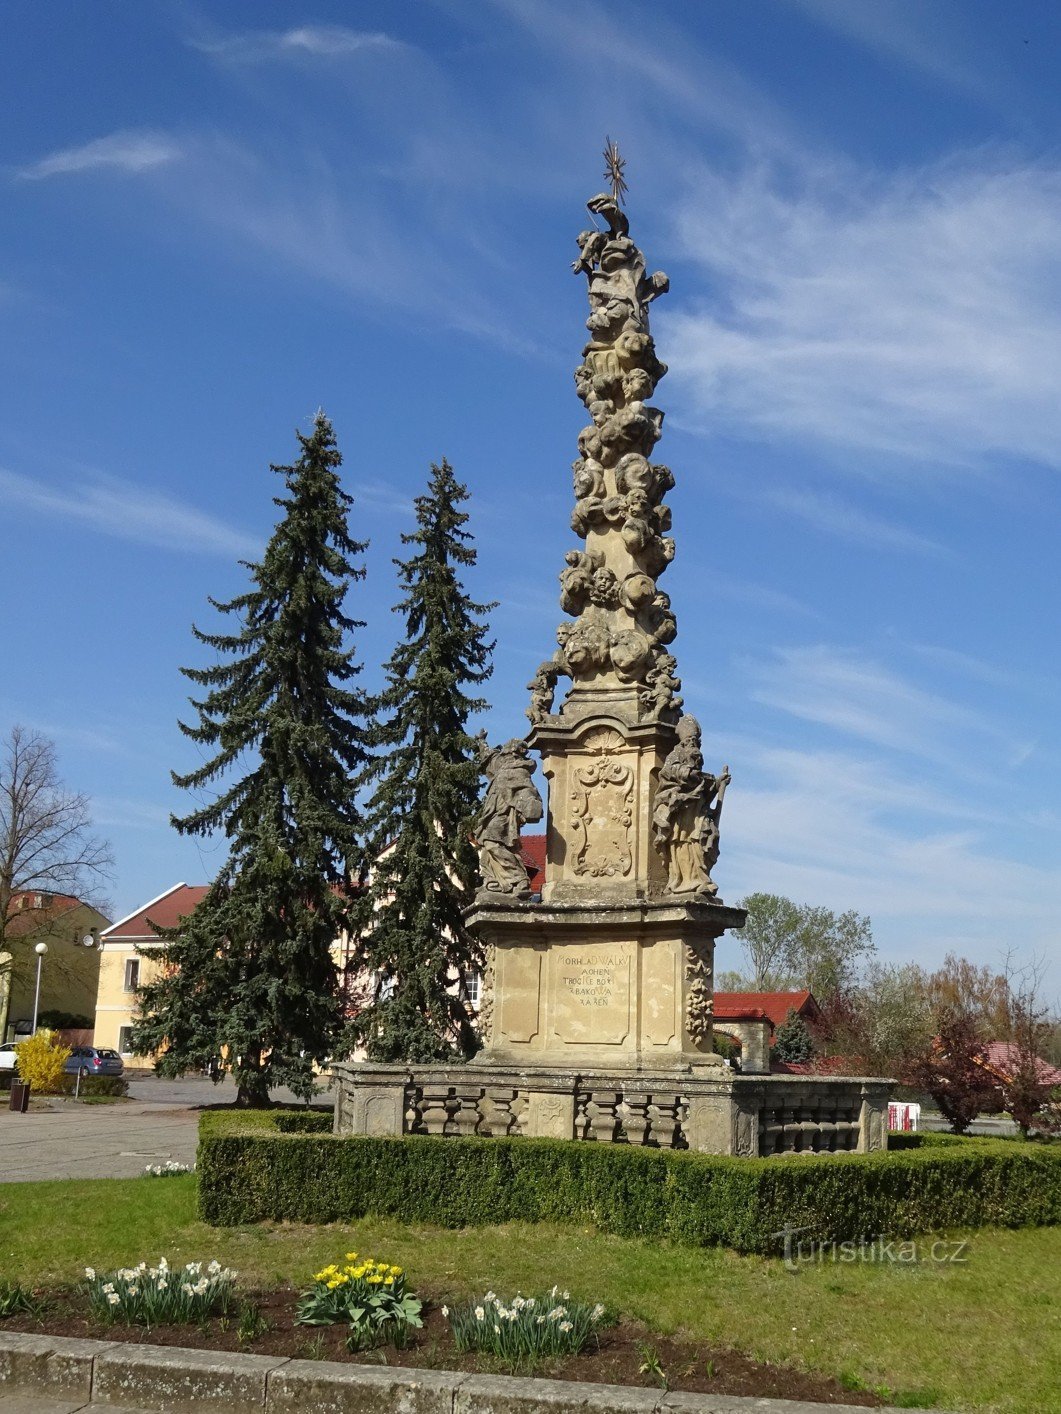 Баков-над-Йизероу – Колонна Святой Троицы на площади Миру